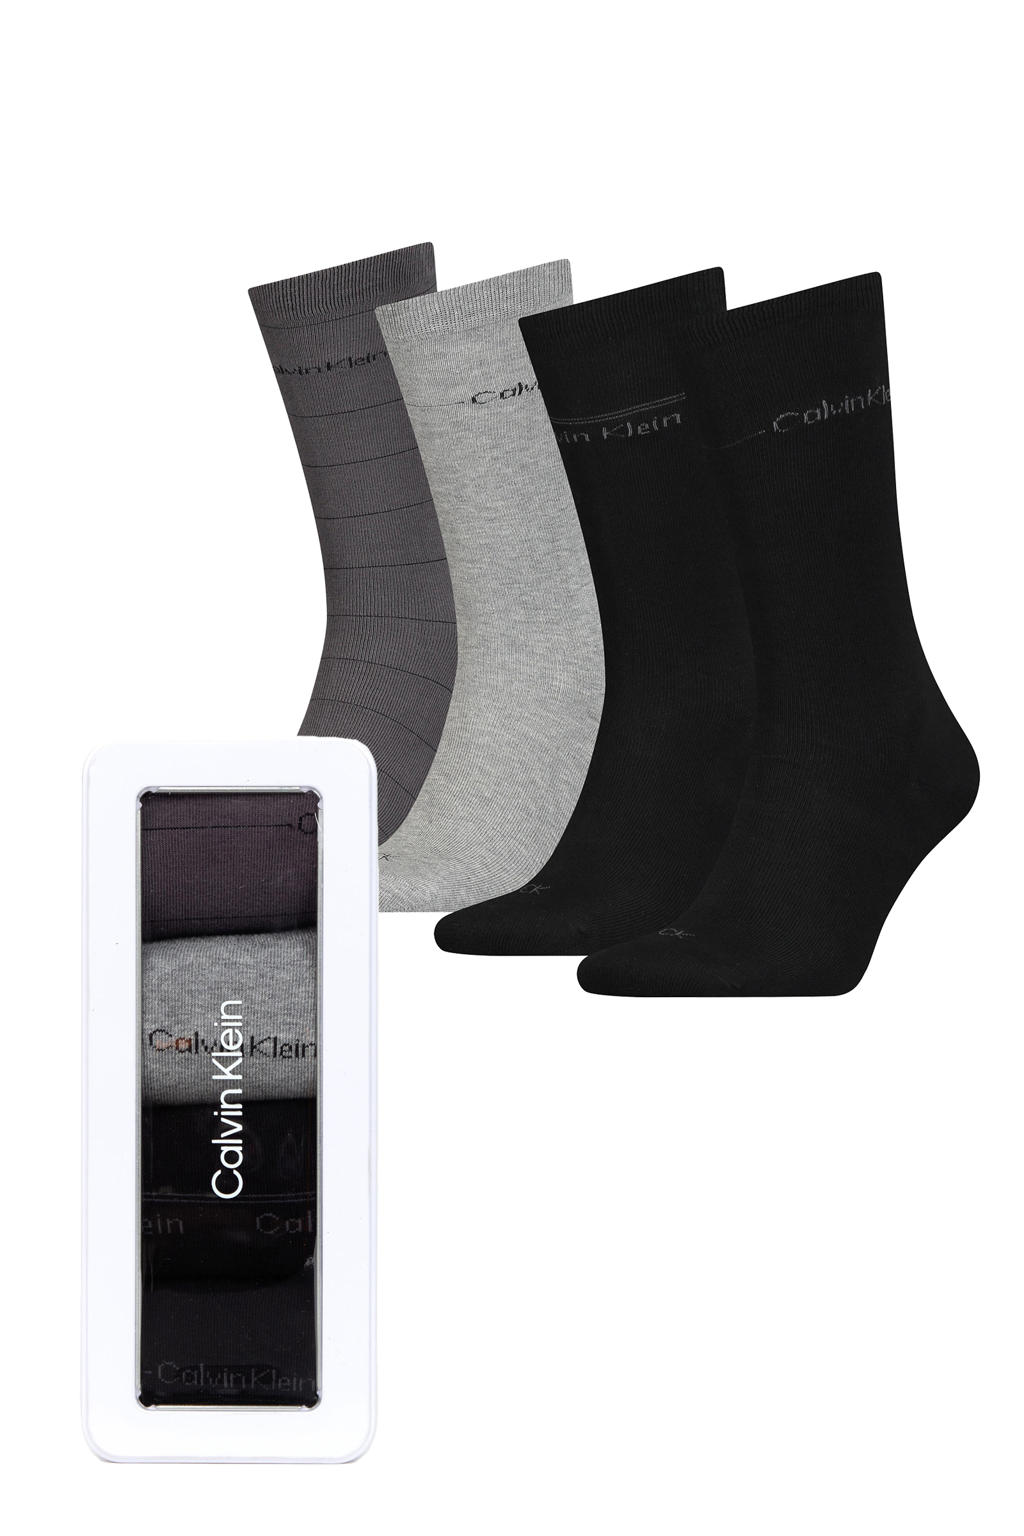 Calvin Klein giftbox sokken - set van 4 zwart/grijs